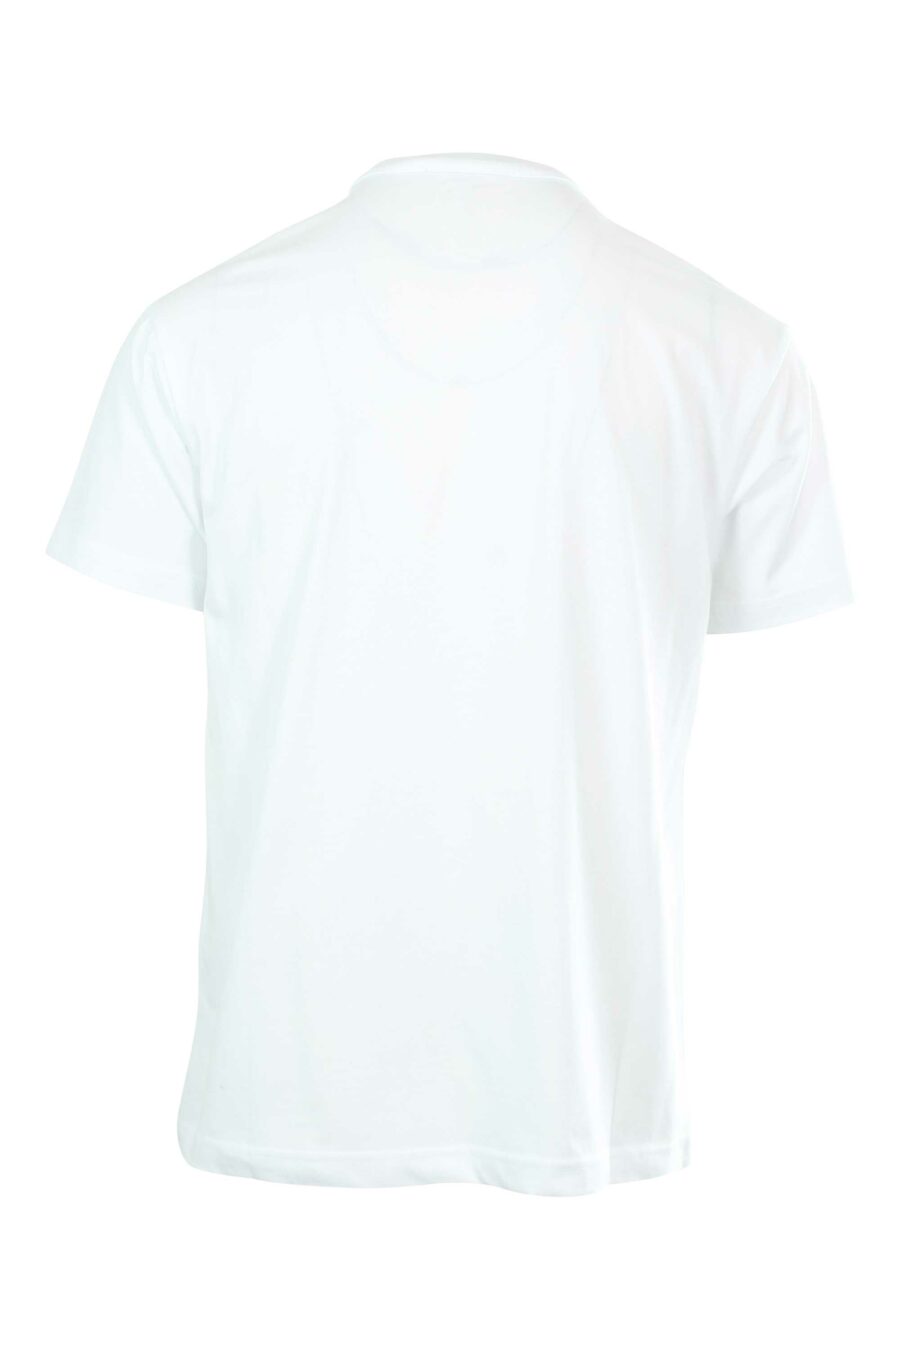 T-shirt blanc avec maxilogue contrasté - 8052019235371 2